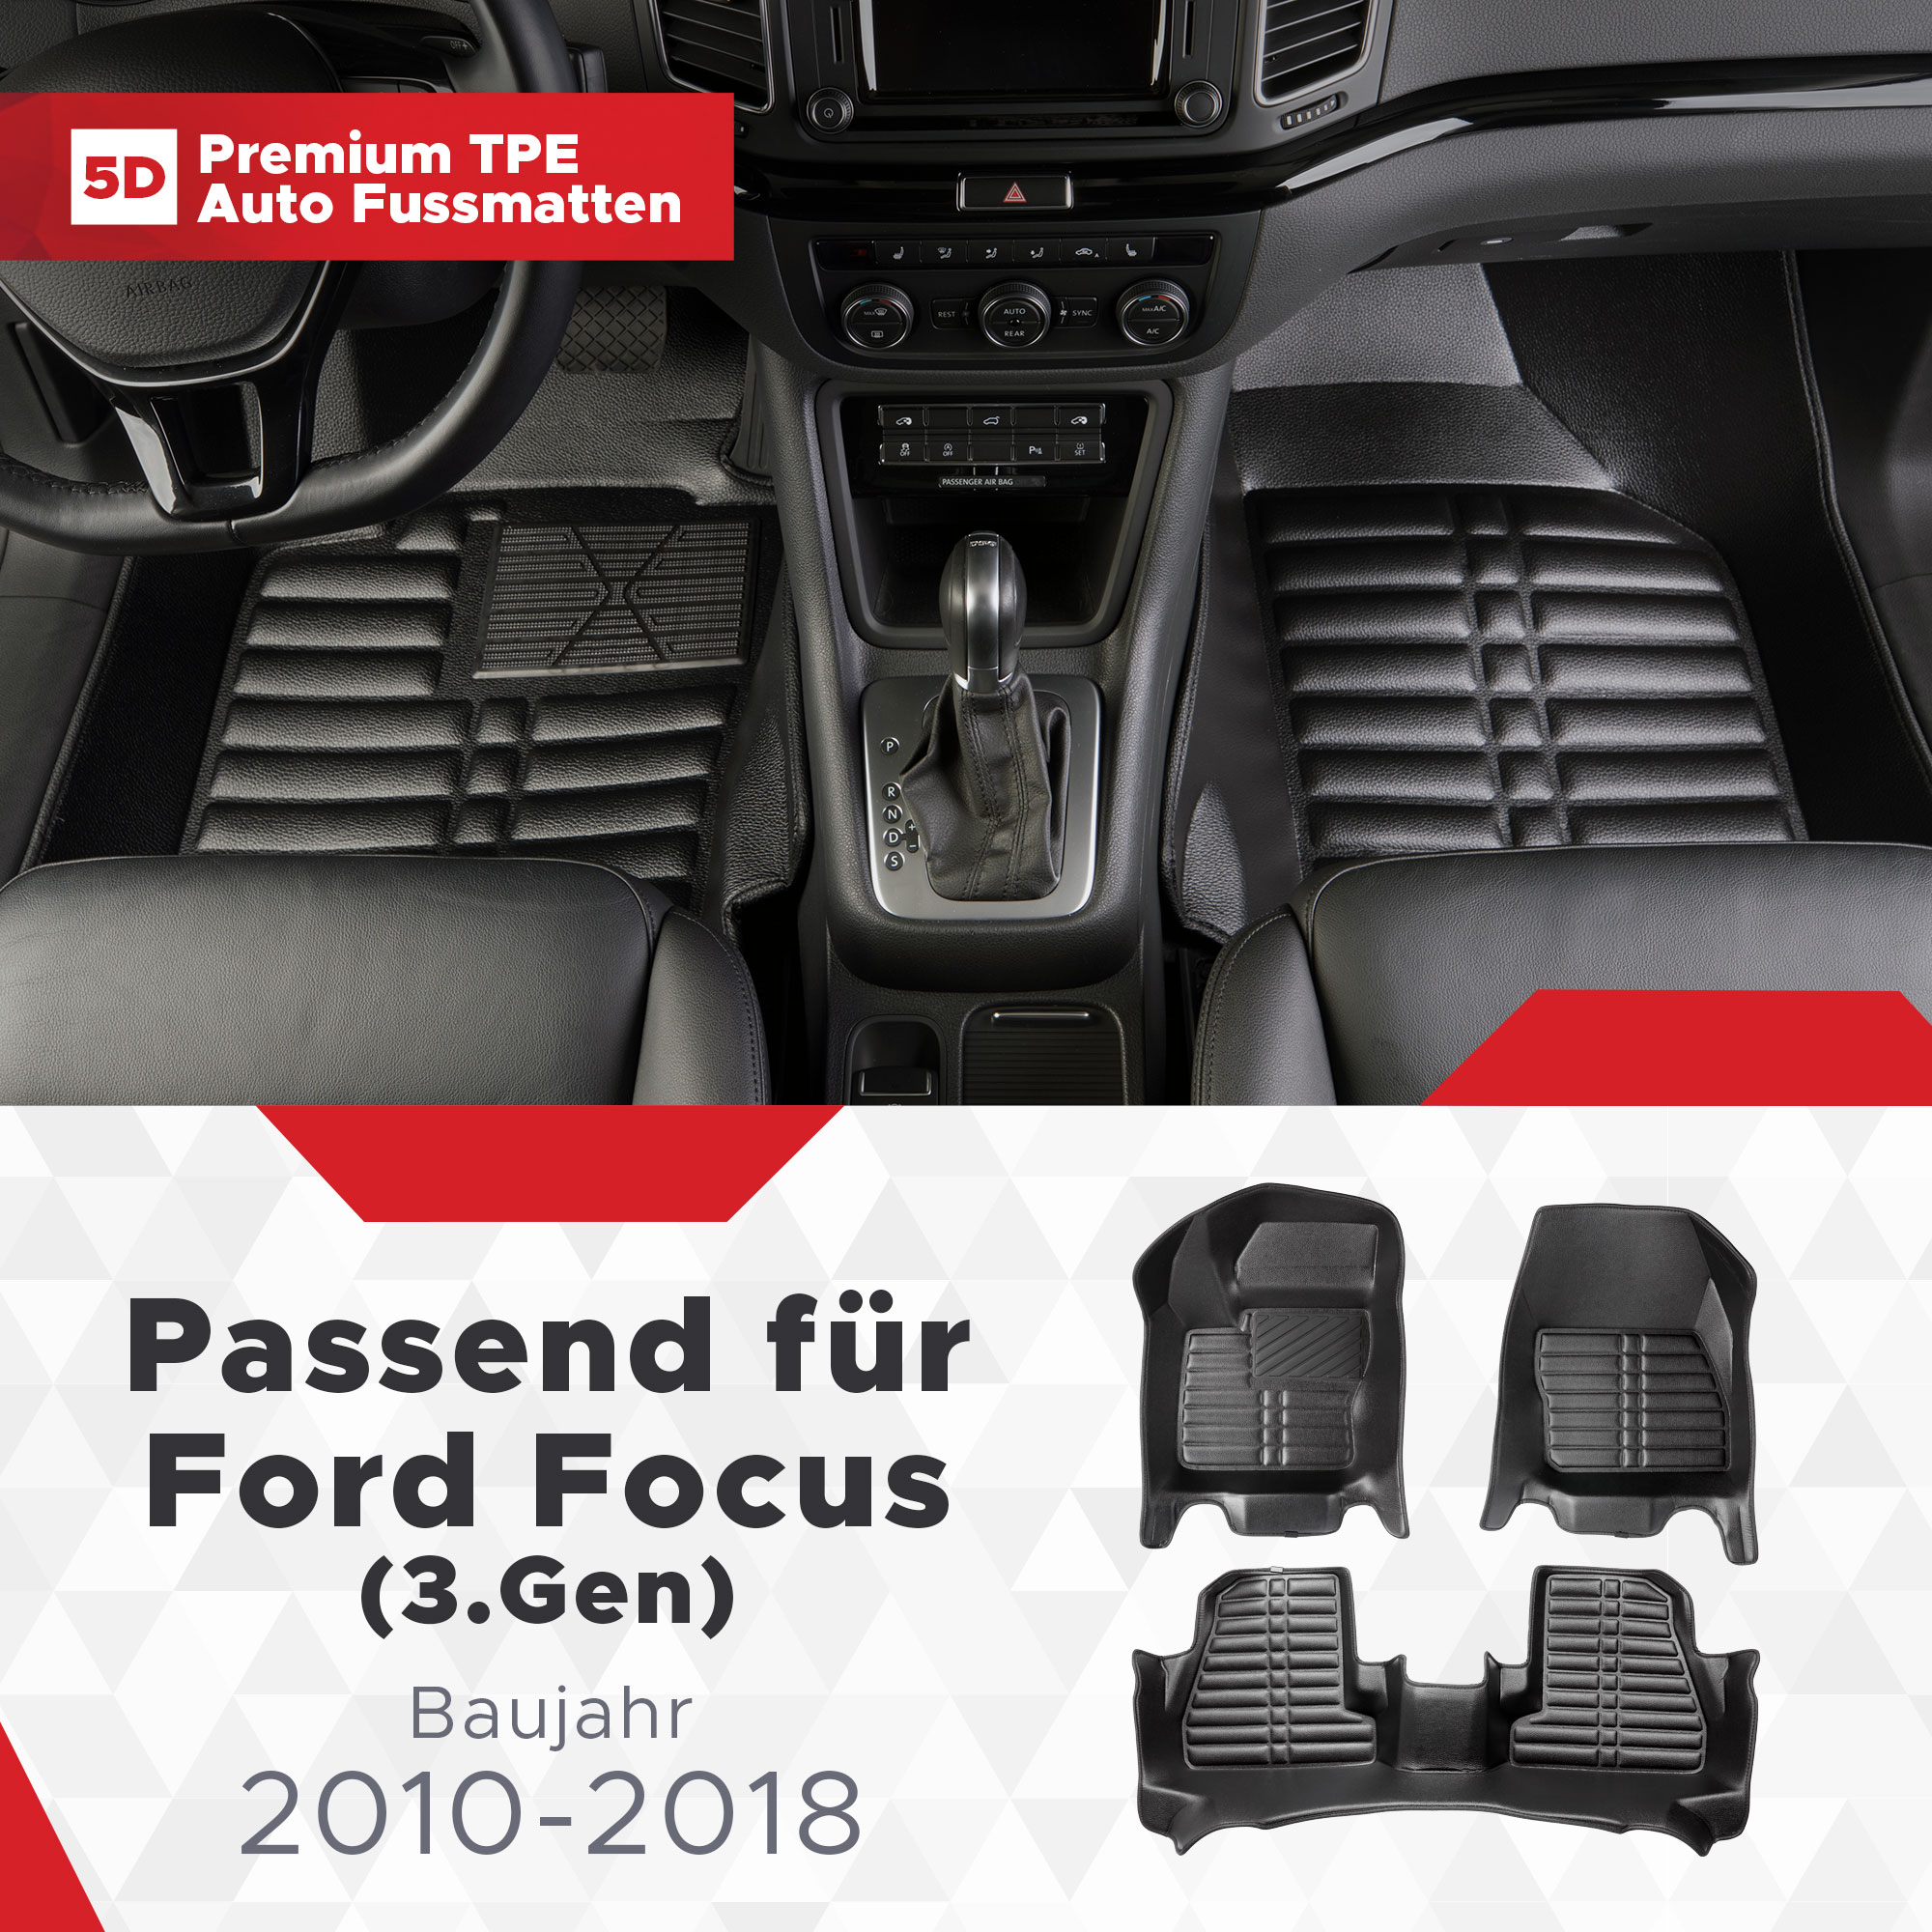 5D Ford Focus (3.Gen) Fussmatten Bj 2010-2018 TPE